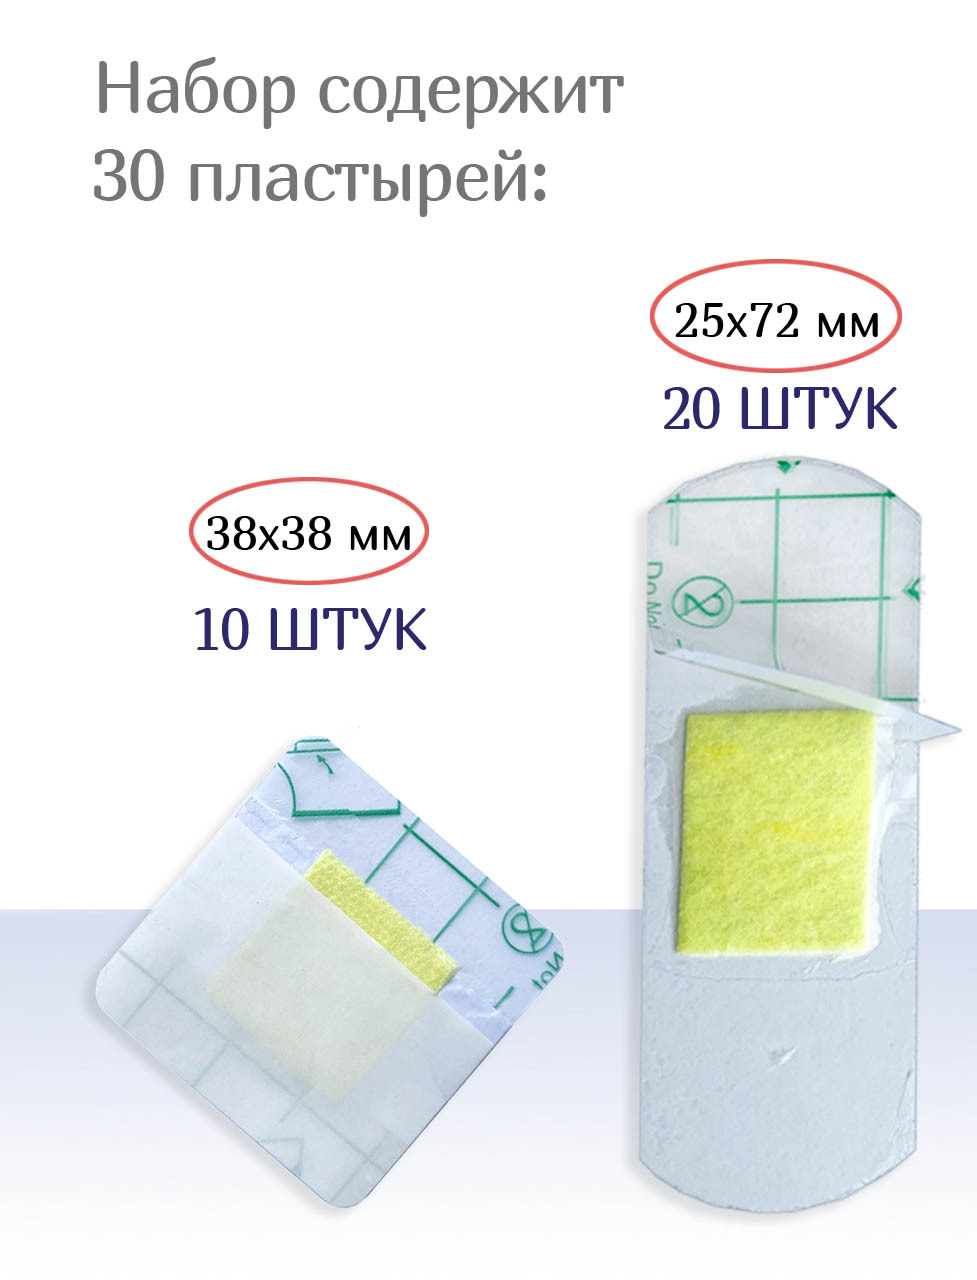 Пластыри водостойкие бактерицидные Мультиплекс Ватерпруф, 2 размера, 15шт. Набор из 2-х упаковок